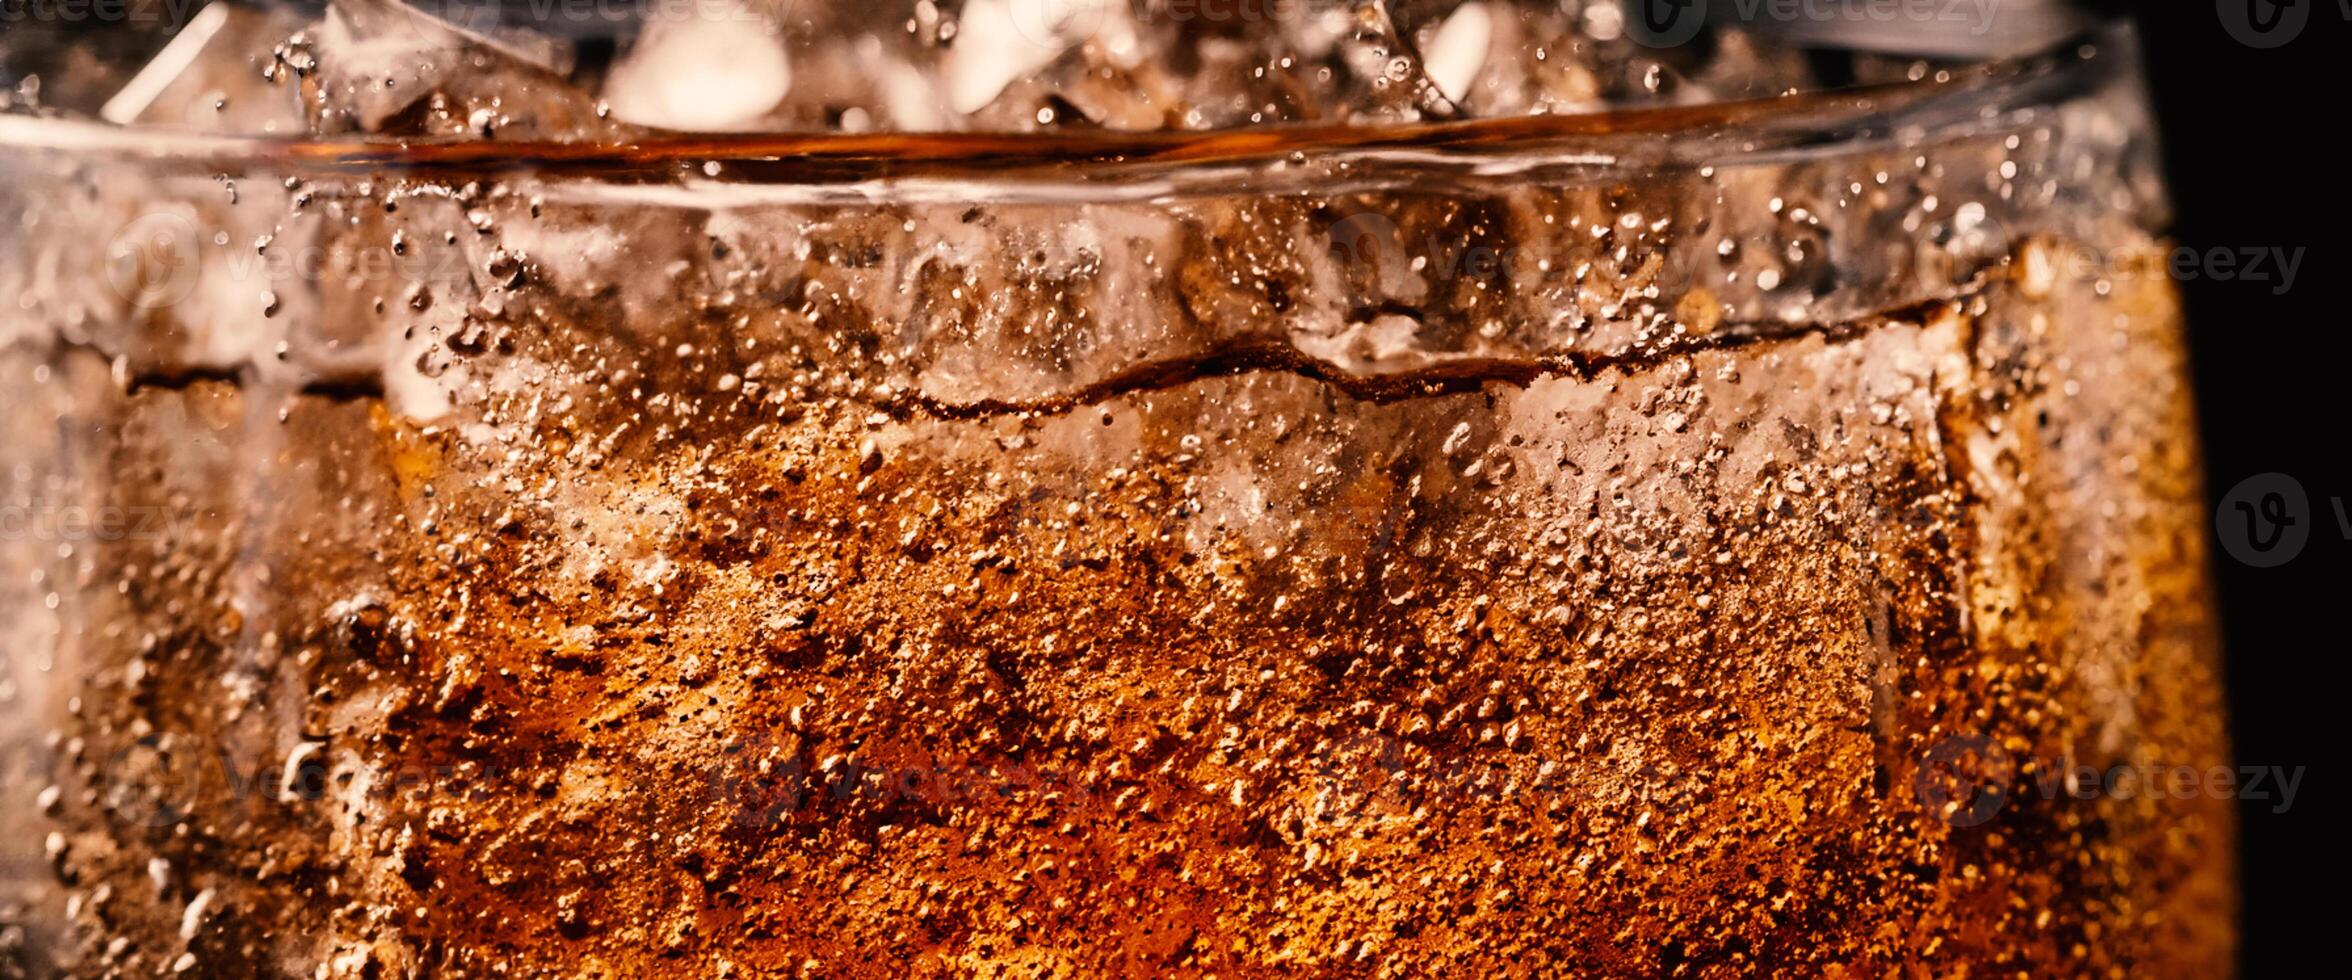 stänk av cola och is. cola soda och is stänk gnistrande eller flytande upp till topp av yta. stänga upp av is i cola vatten. textur av karbonat dryck med bubblor i glas. kall dryck bakgrund foto